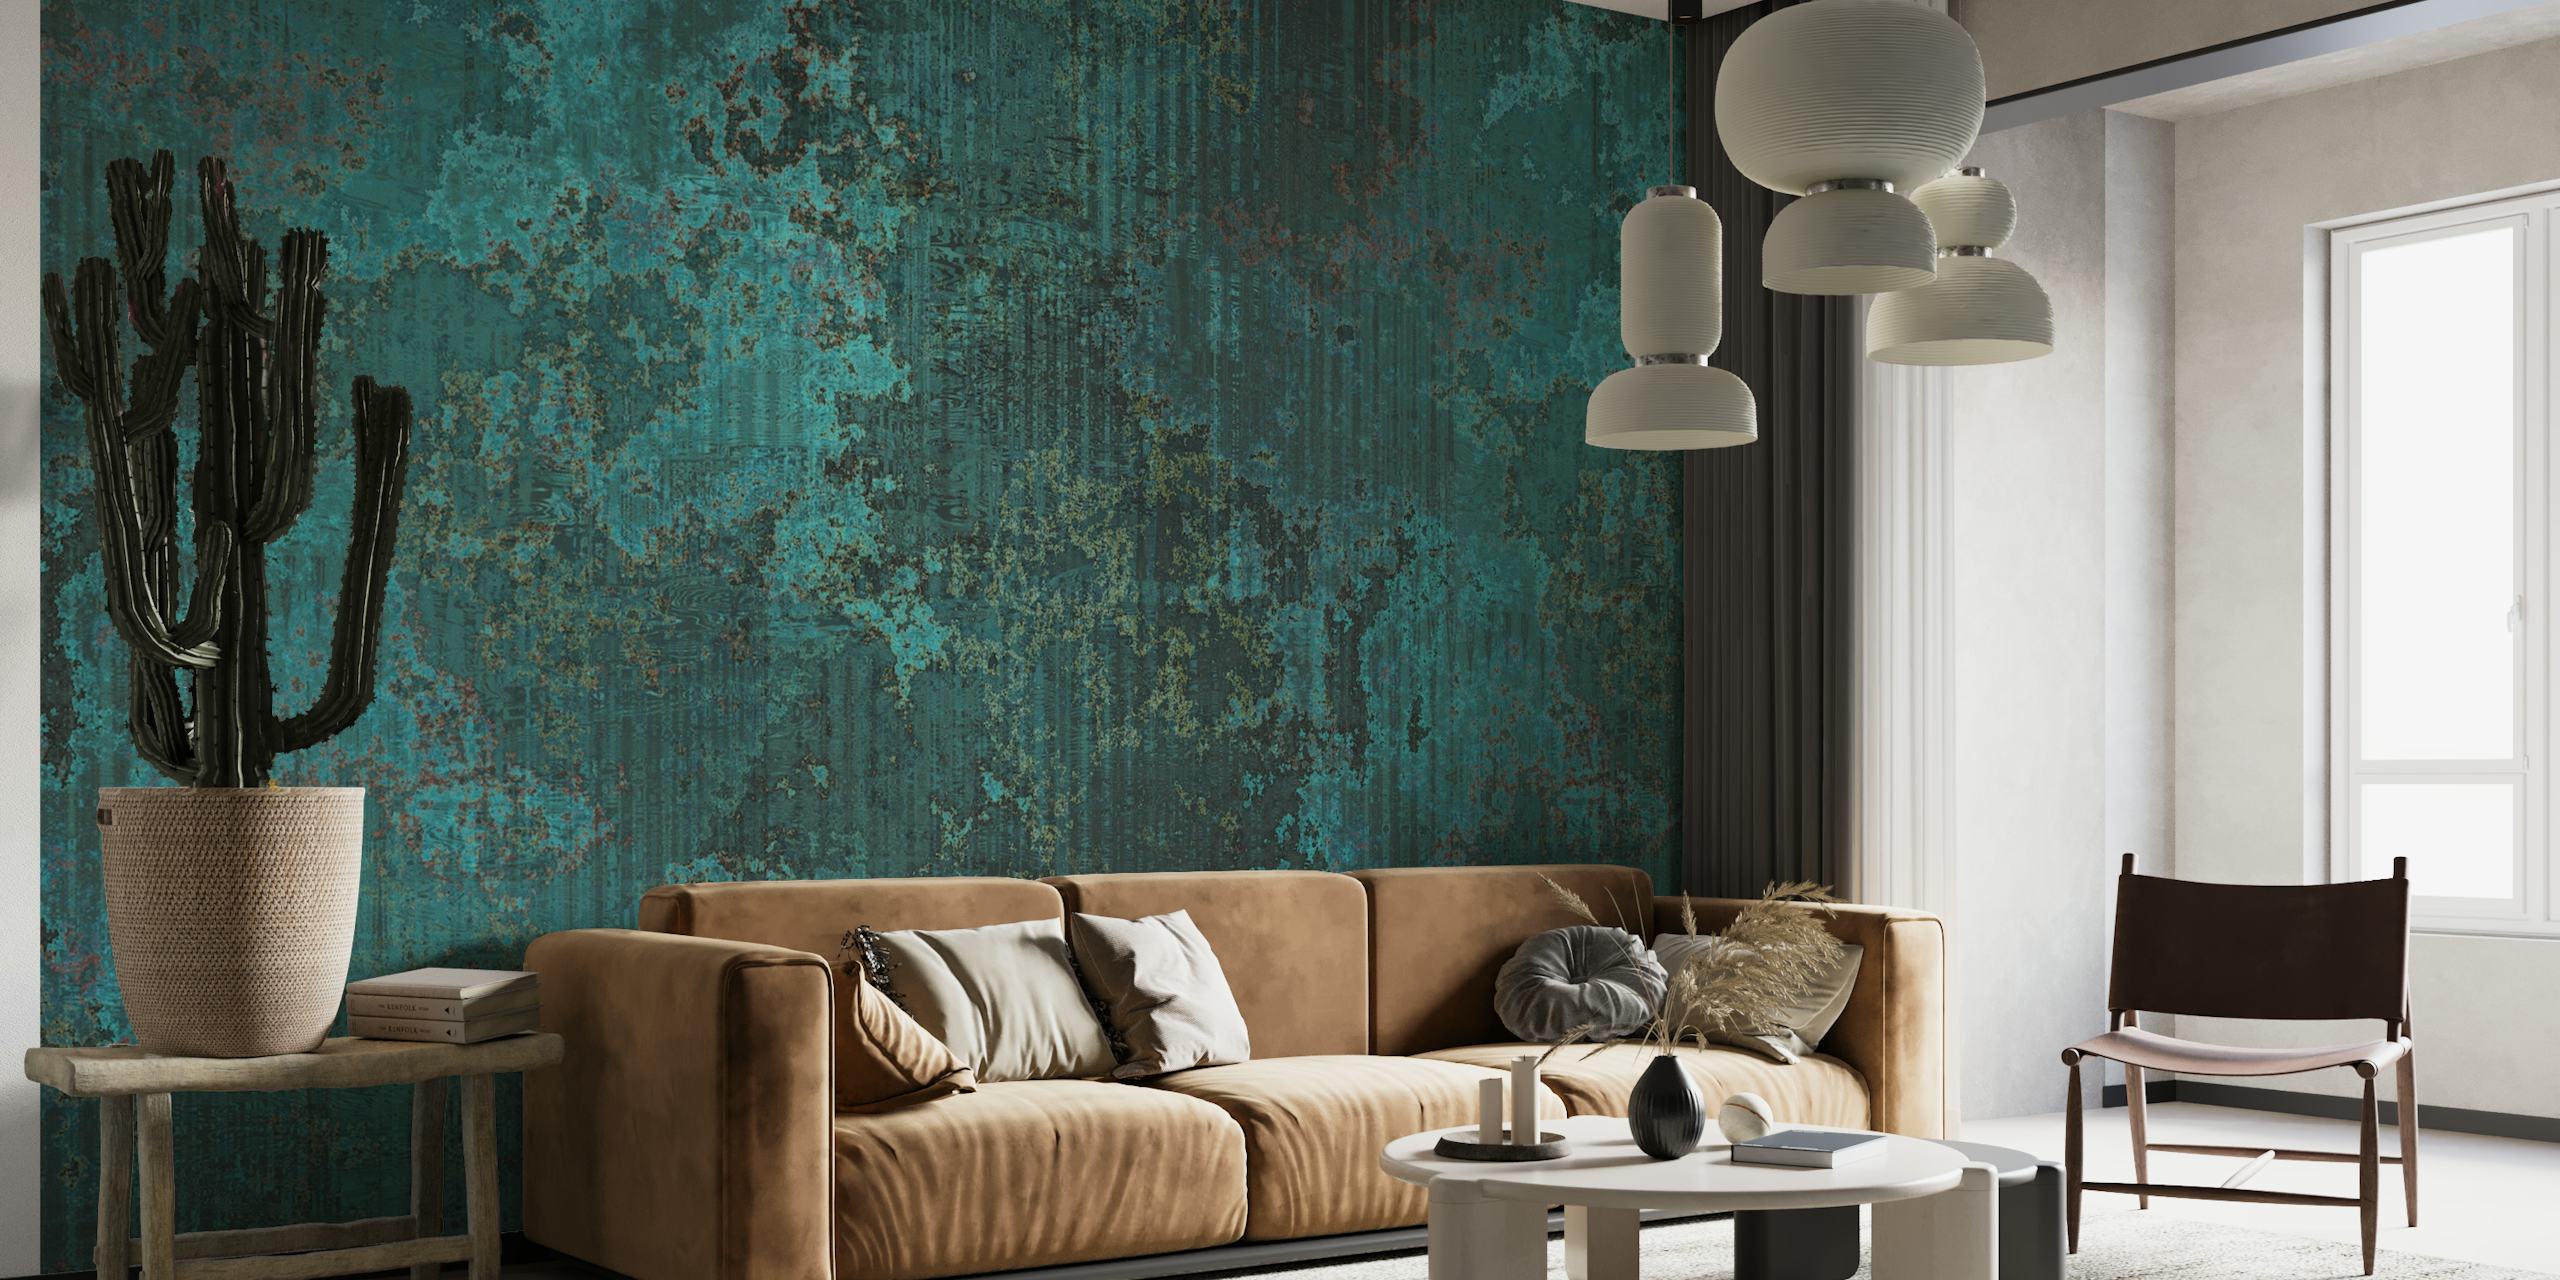 Donkergroenblauw gecorrodeerde metalen textuur muurschildering met een mix van rustieke elegantie.